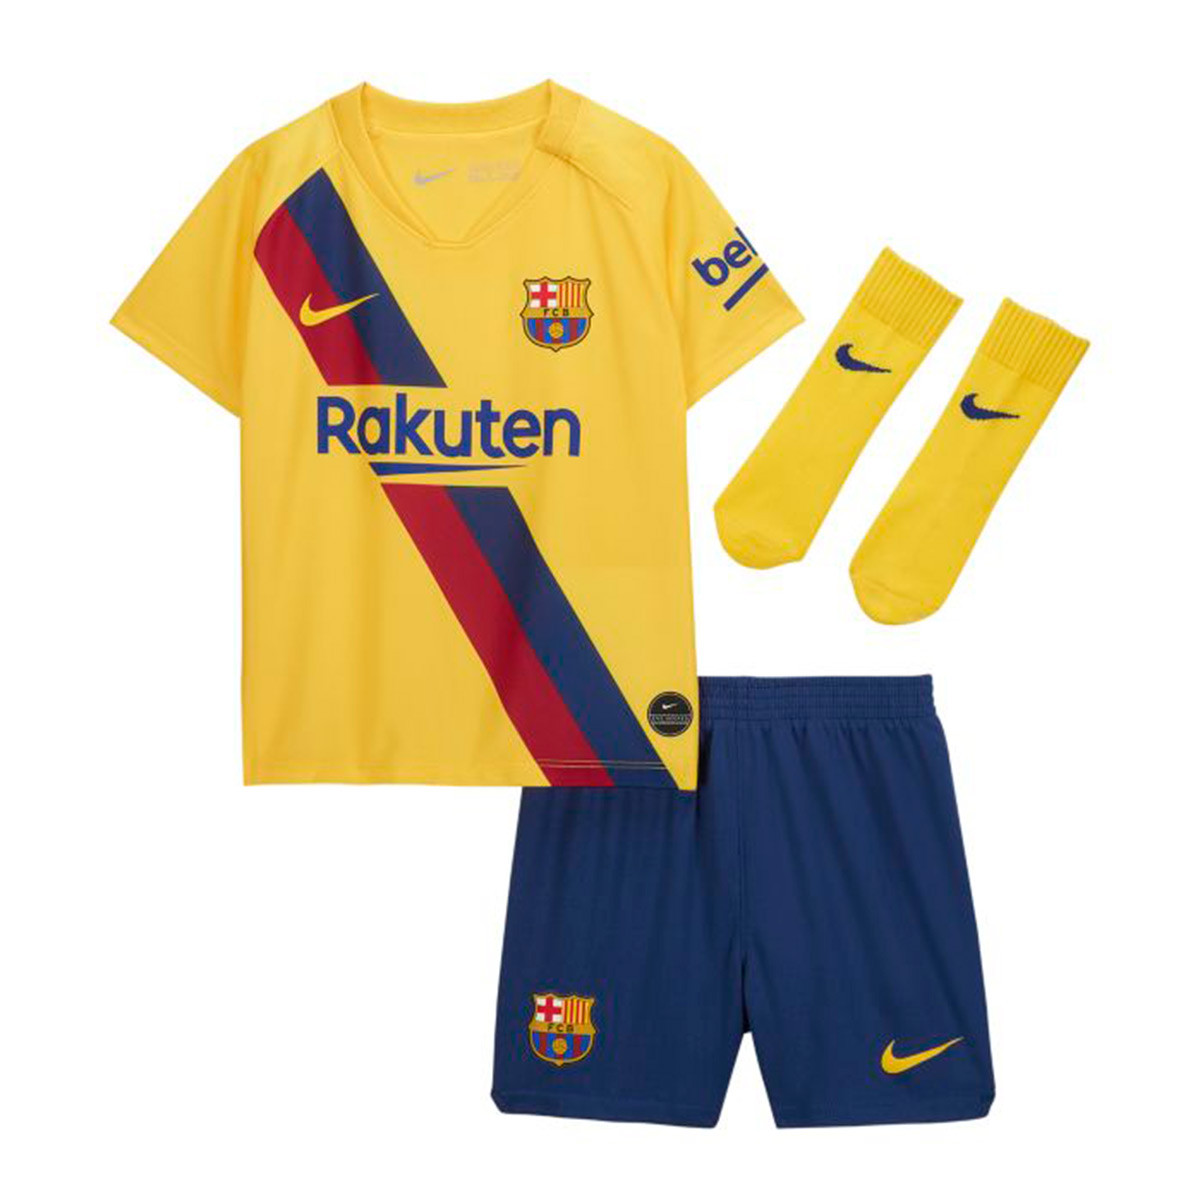 1 Uniforme De Barcelona Barca Jersey Y Calcetas. Messi Nombre Original Short